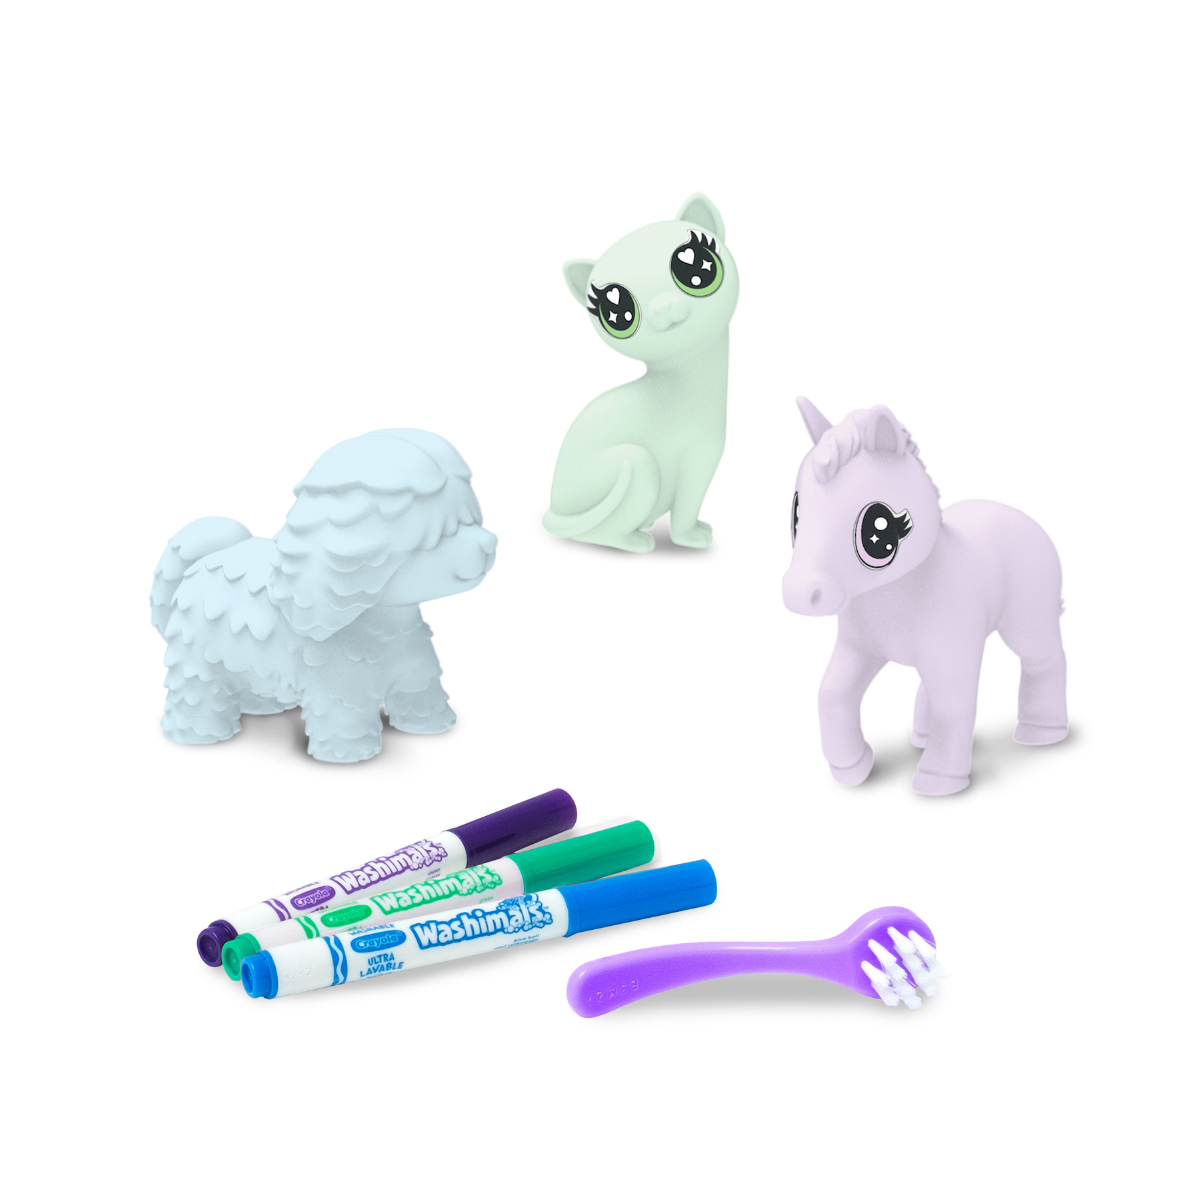 Crayola washimals pastel pets - set ricarica con 3 cuccioli, 3 pennarelli lavabili e spazzolina, gioco e regalo per bambini, da 3 anni - CRAYOLA